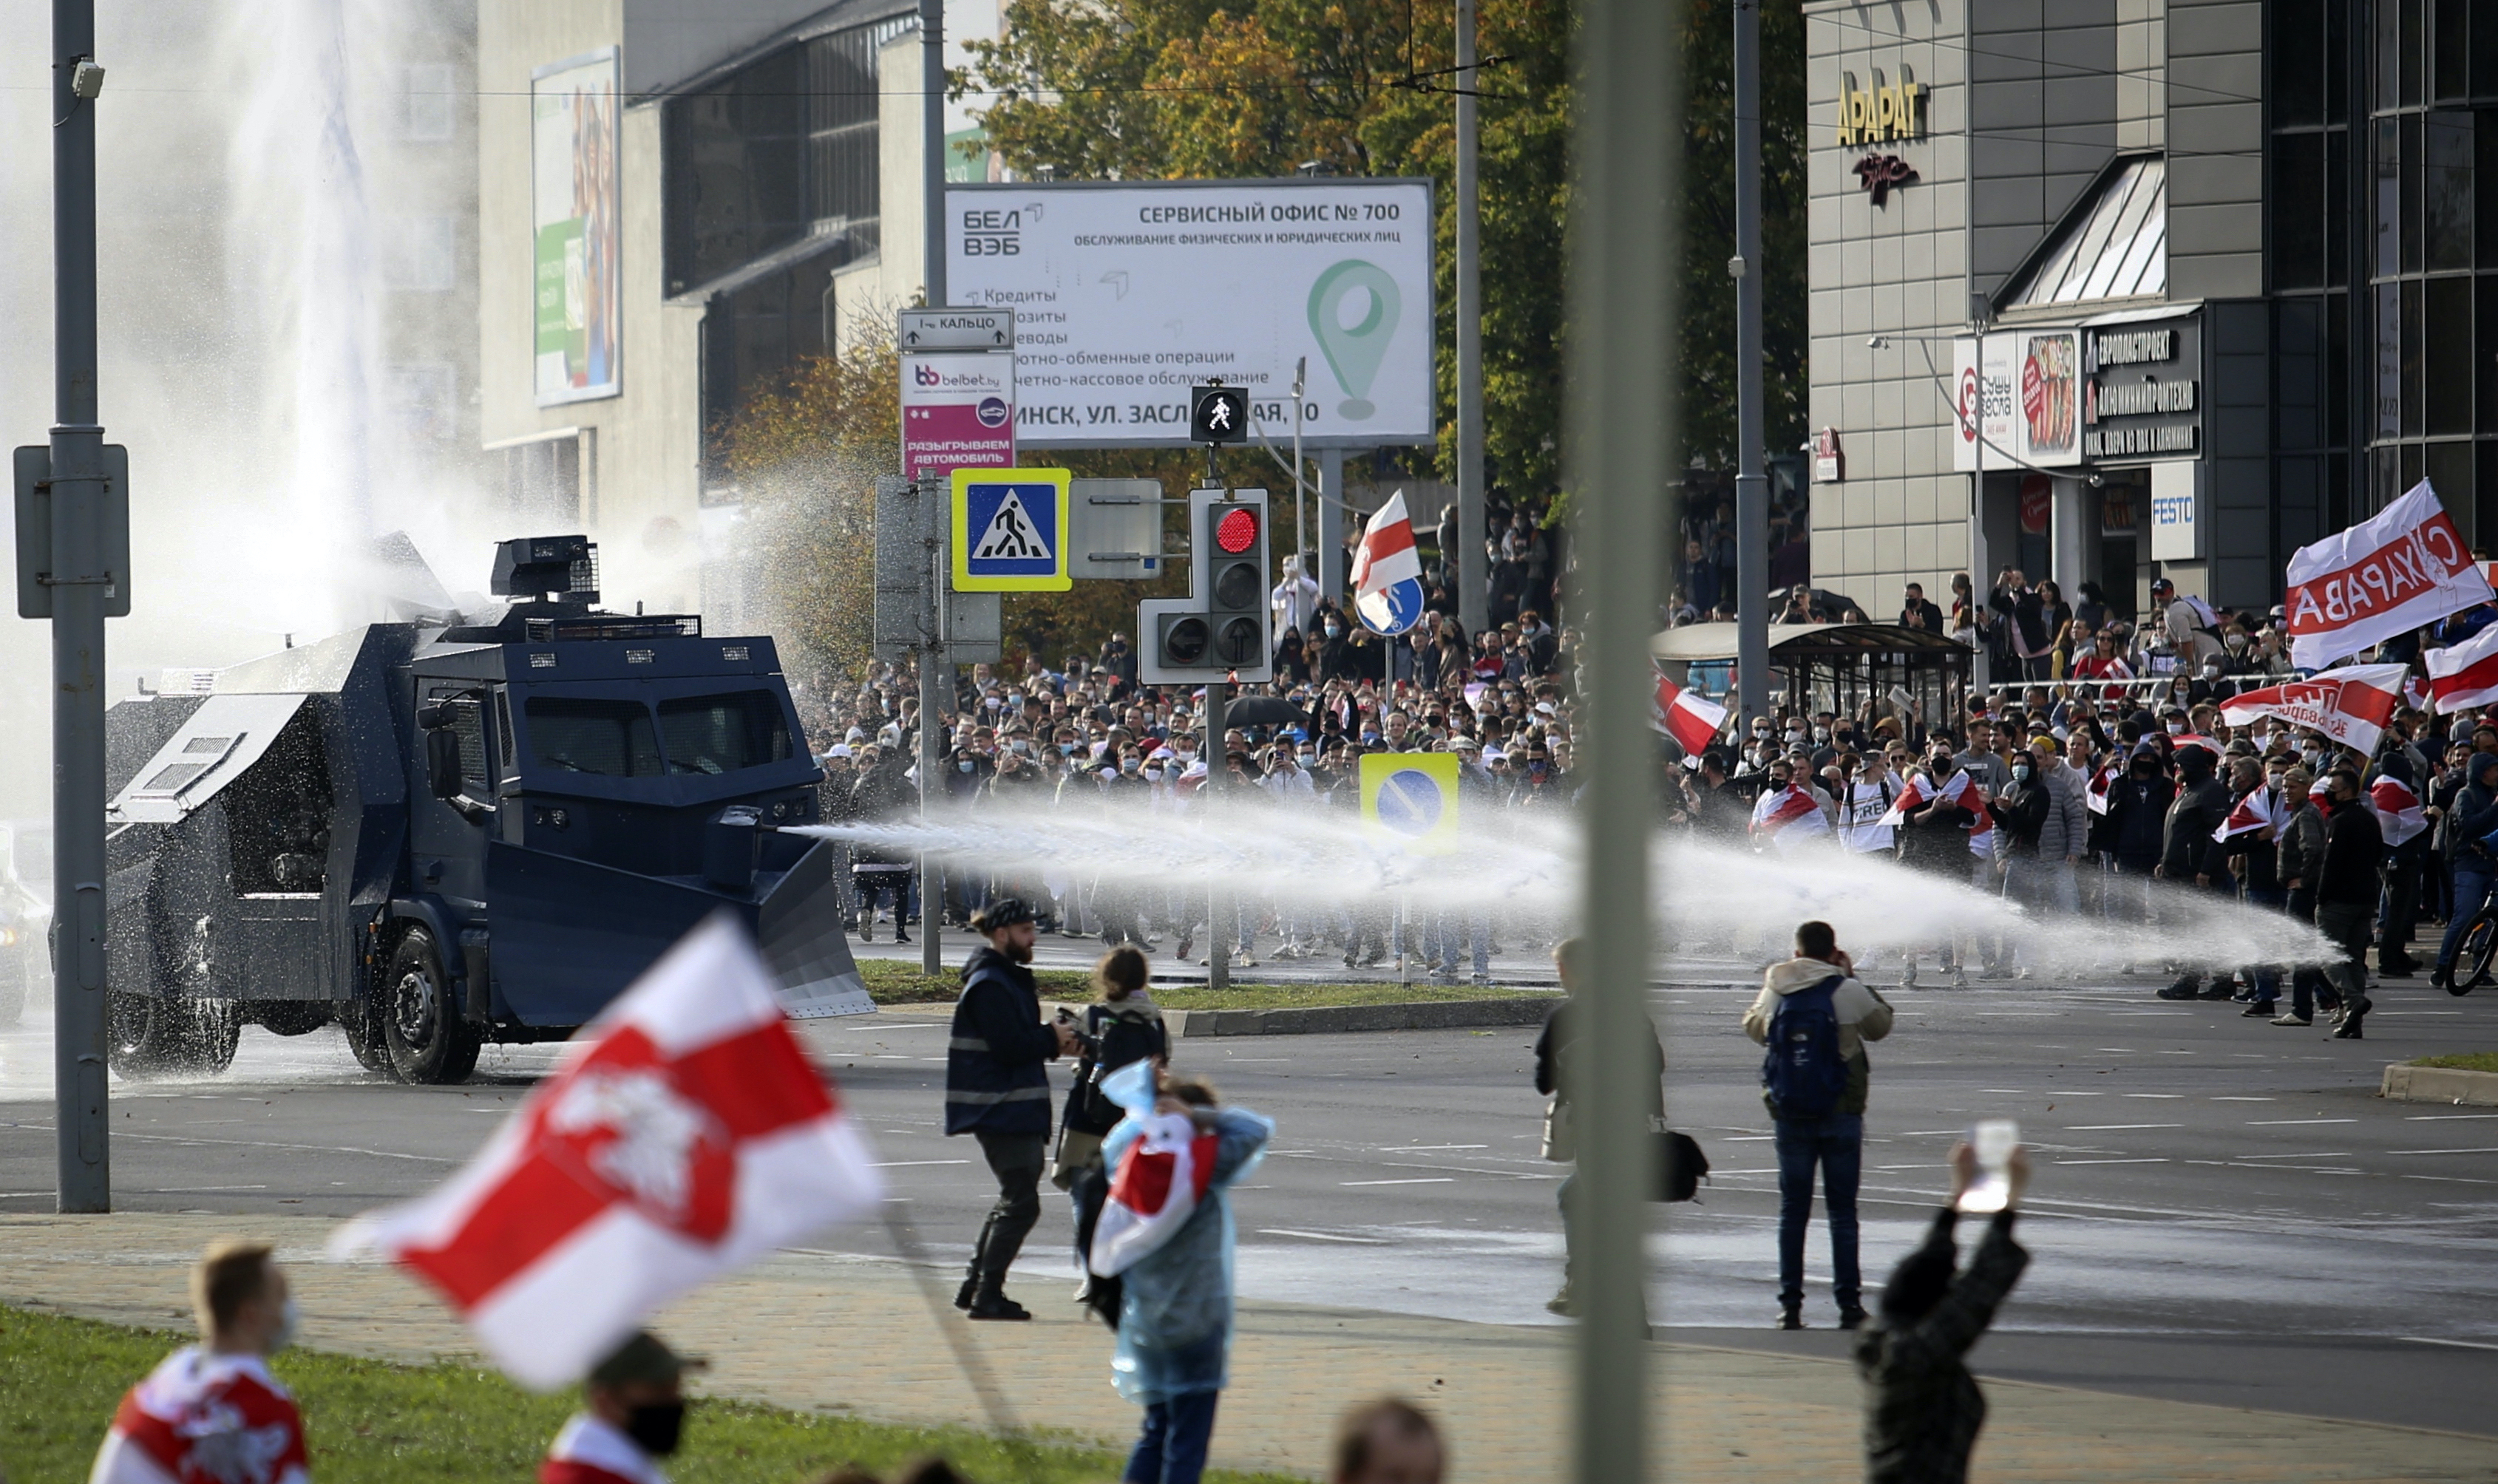 Die Polizei setzt einen Wasserwerfer gegen Demonstranten während einer Kundgebung in Minsk, Belarus, ein 